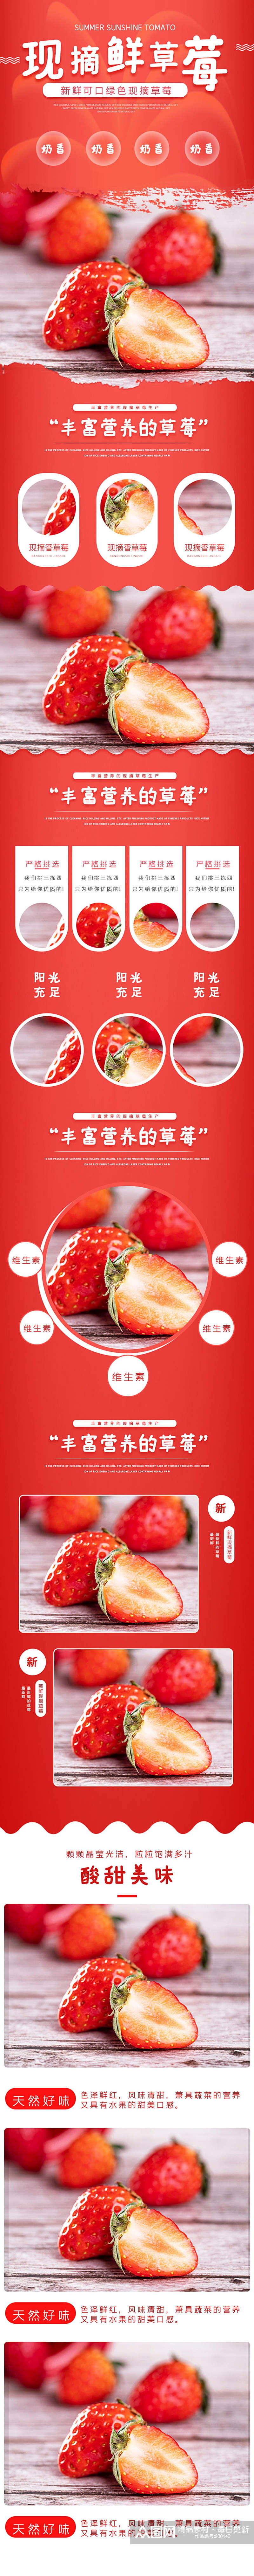 草莓蔬菜水果新鲜食品电商详情页素材